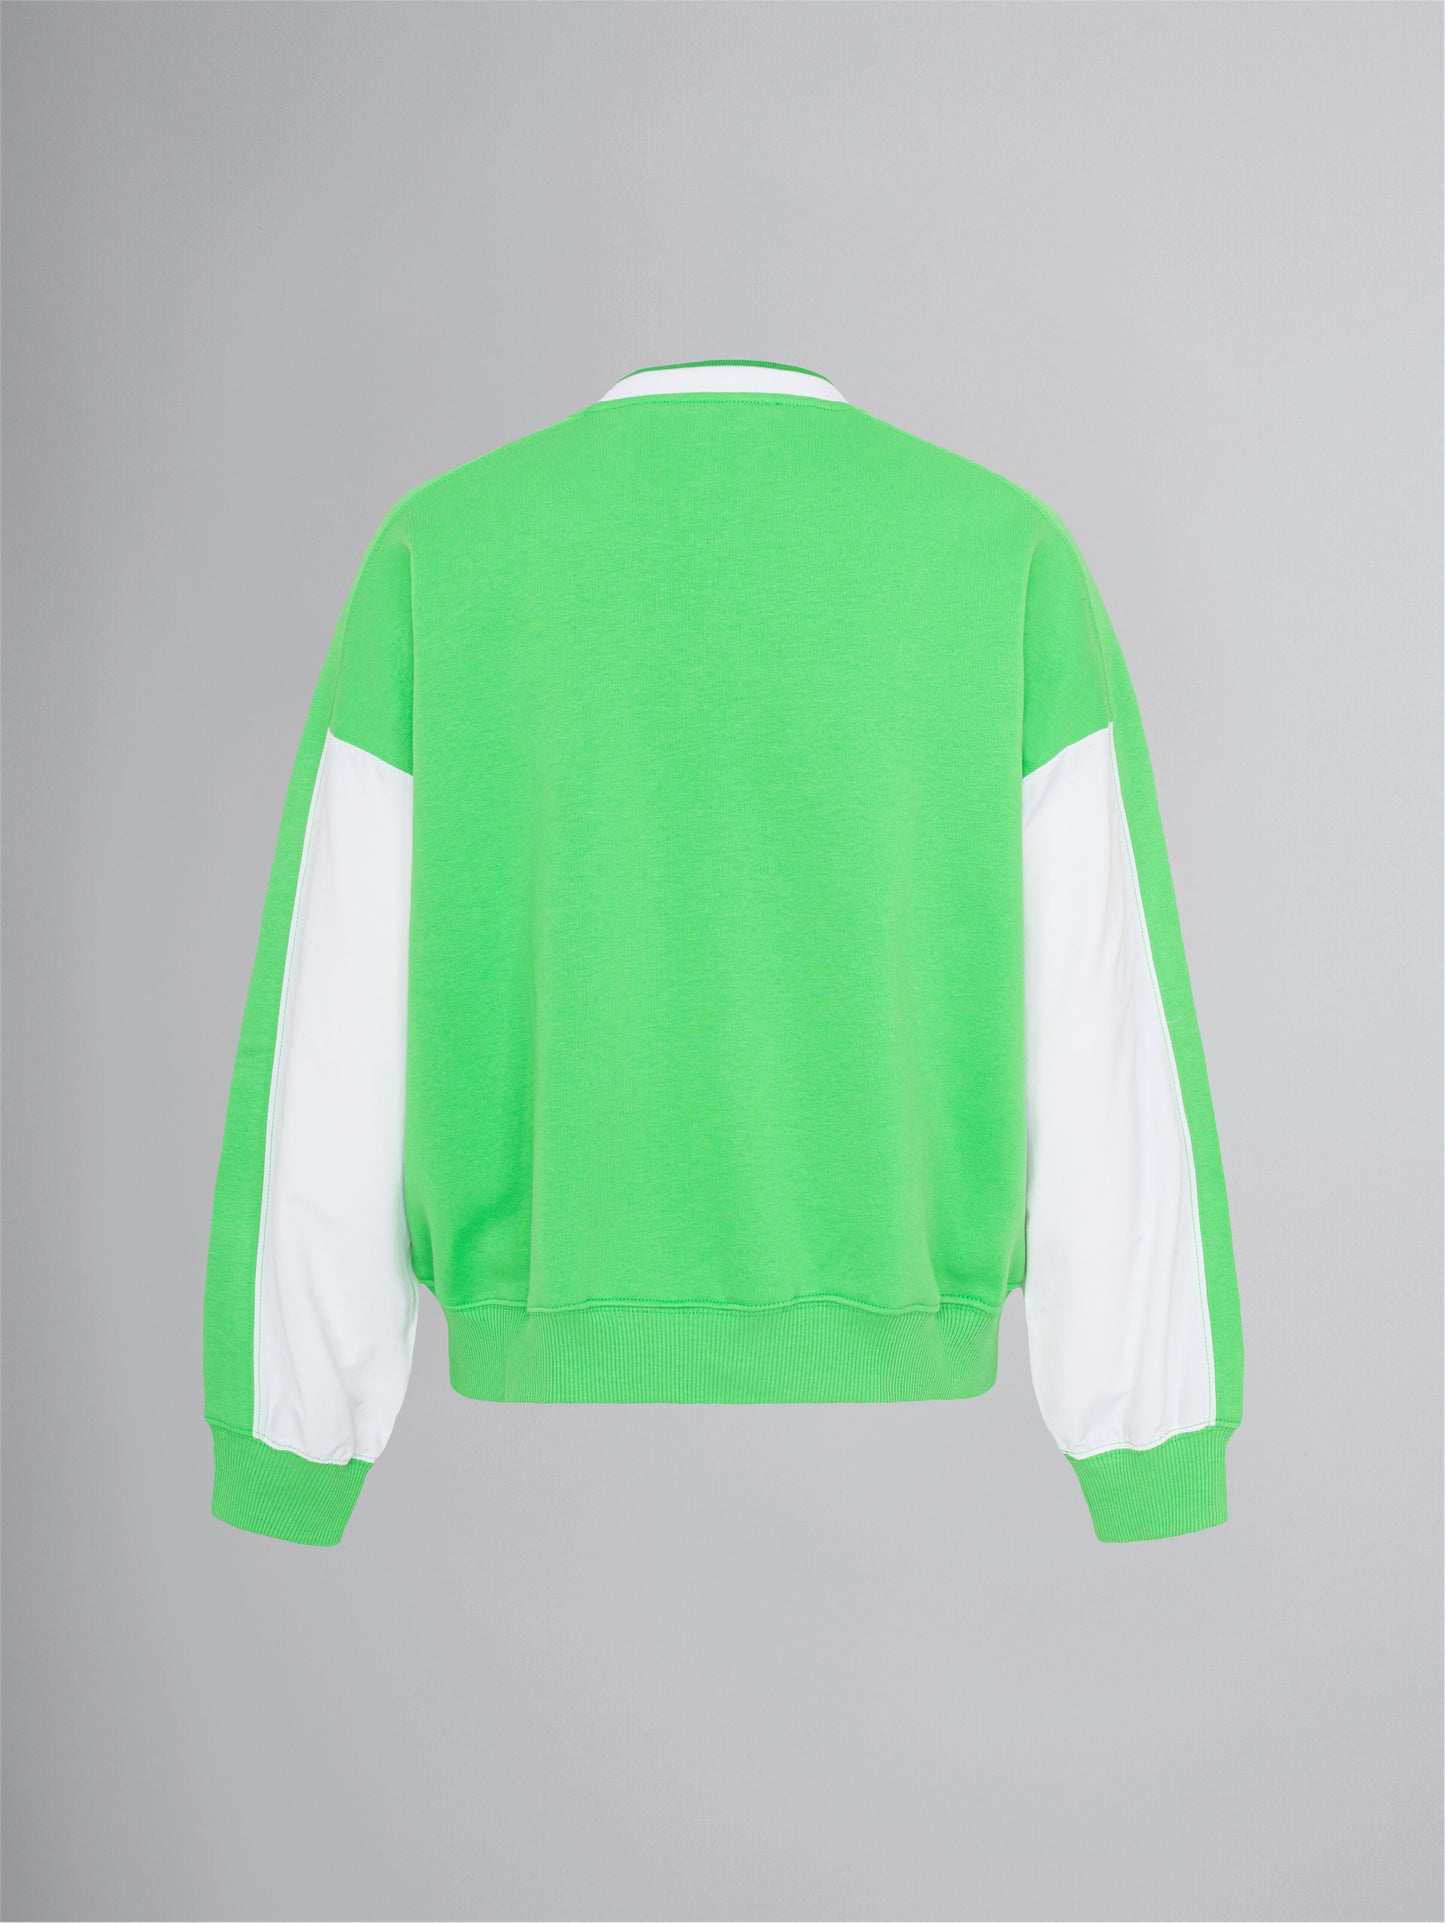 N A C H H A L T I G *  Blouson Sweater - kermit green